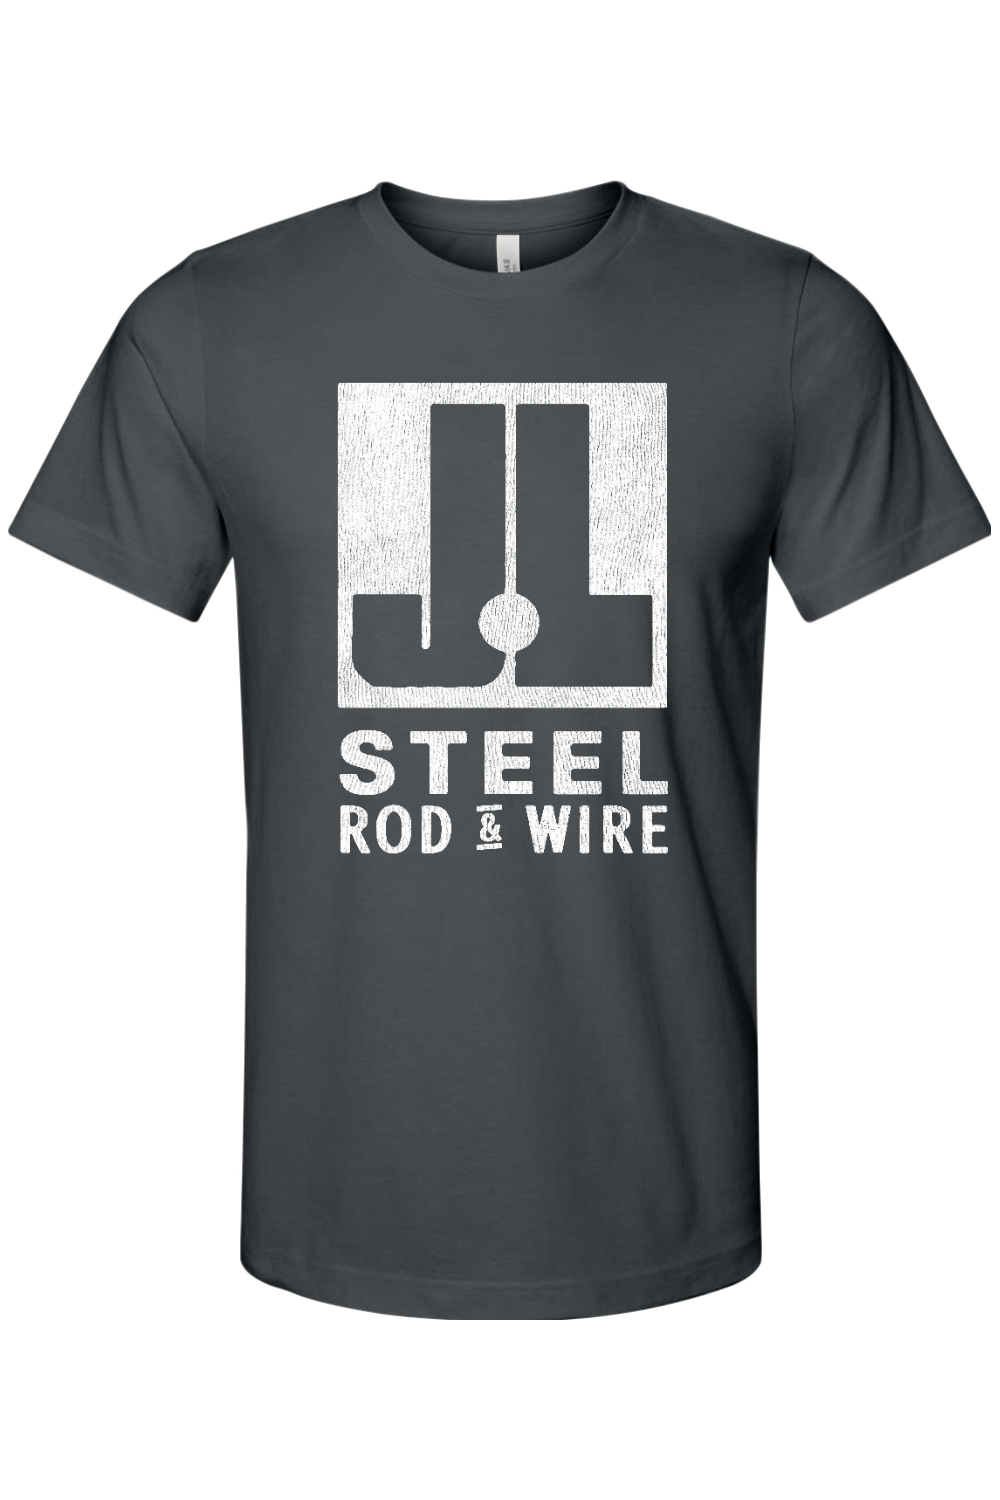 J&L Steel - Rod & Wire - Bella + Canvas Jersey Tee - Yinzylvania